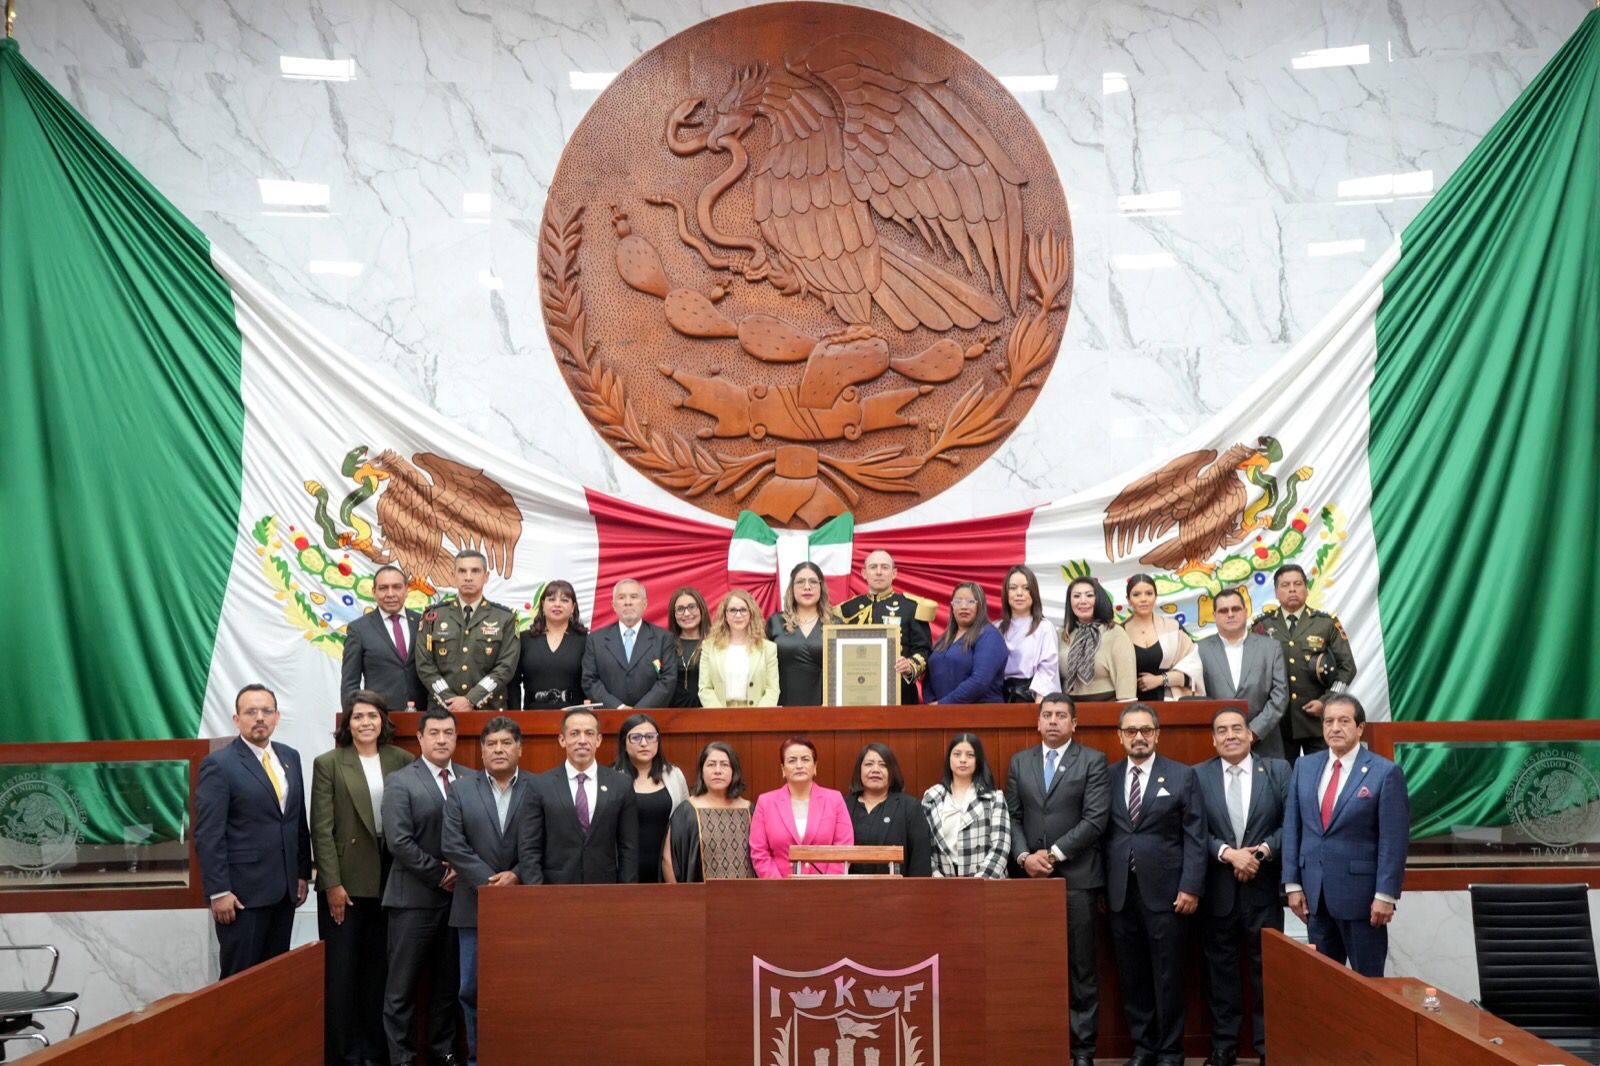 Reconoce LXIV Legislatura al Heroico Colegio Militar en el marco del bicentenario de su fundación